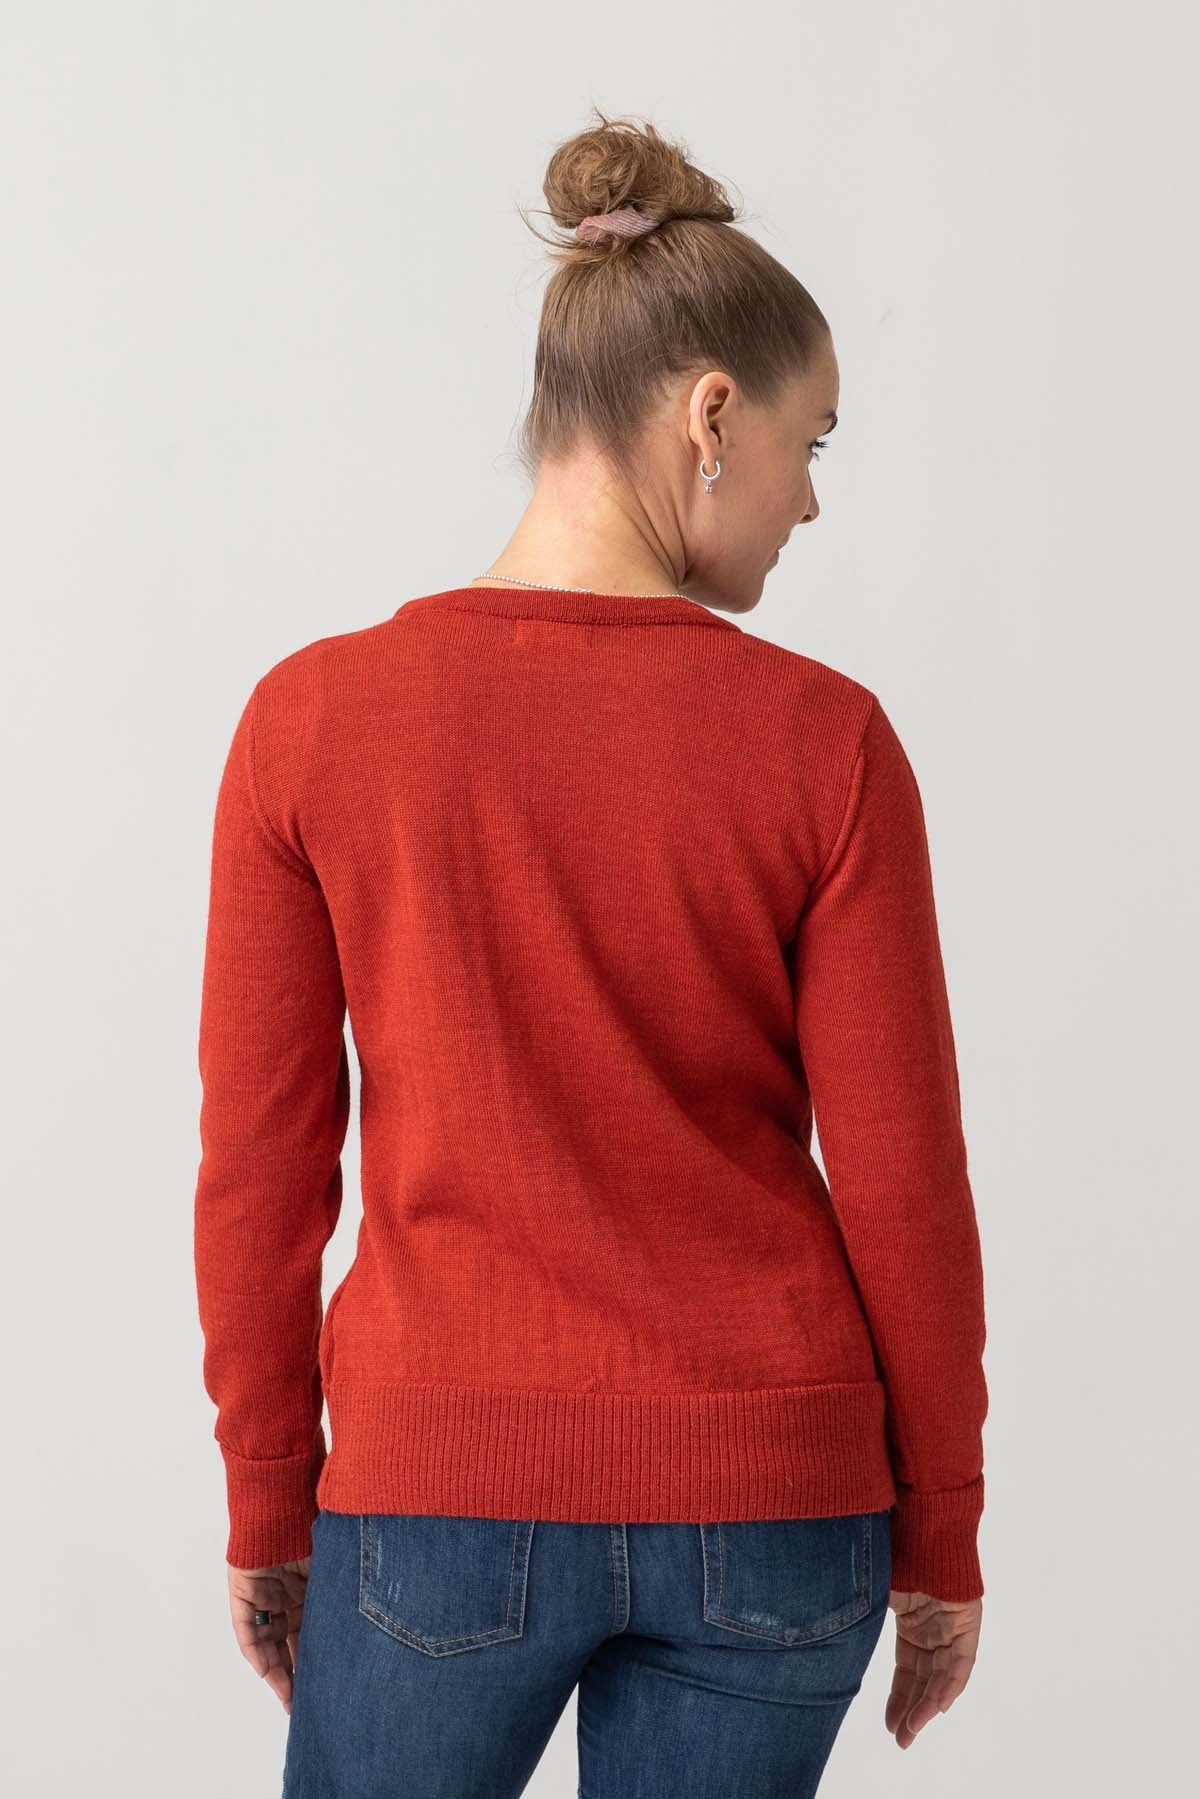 Ollanta sweater - mountain ash